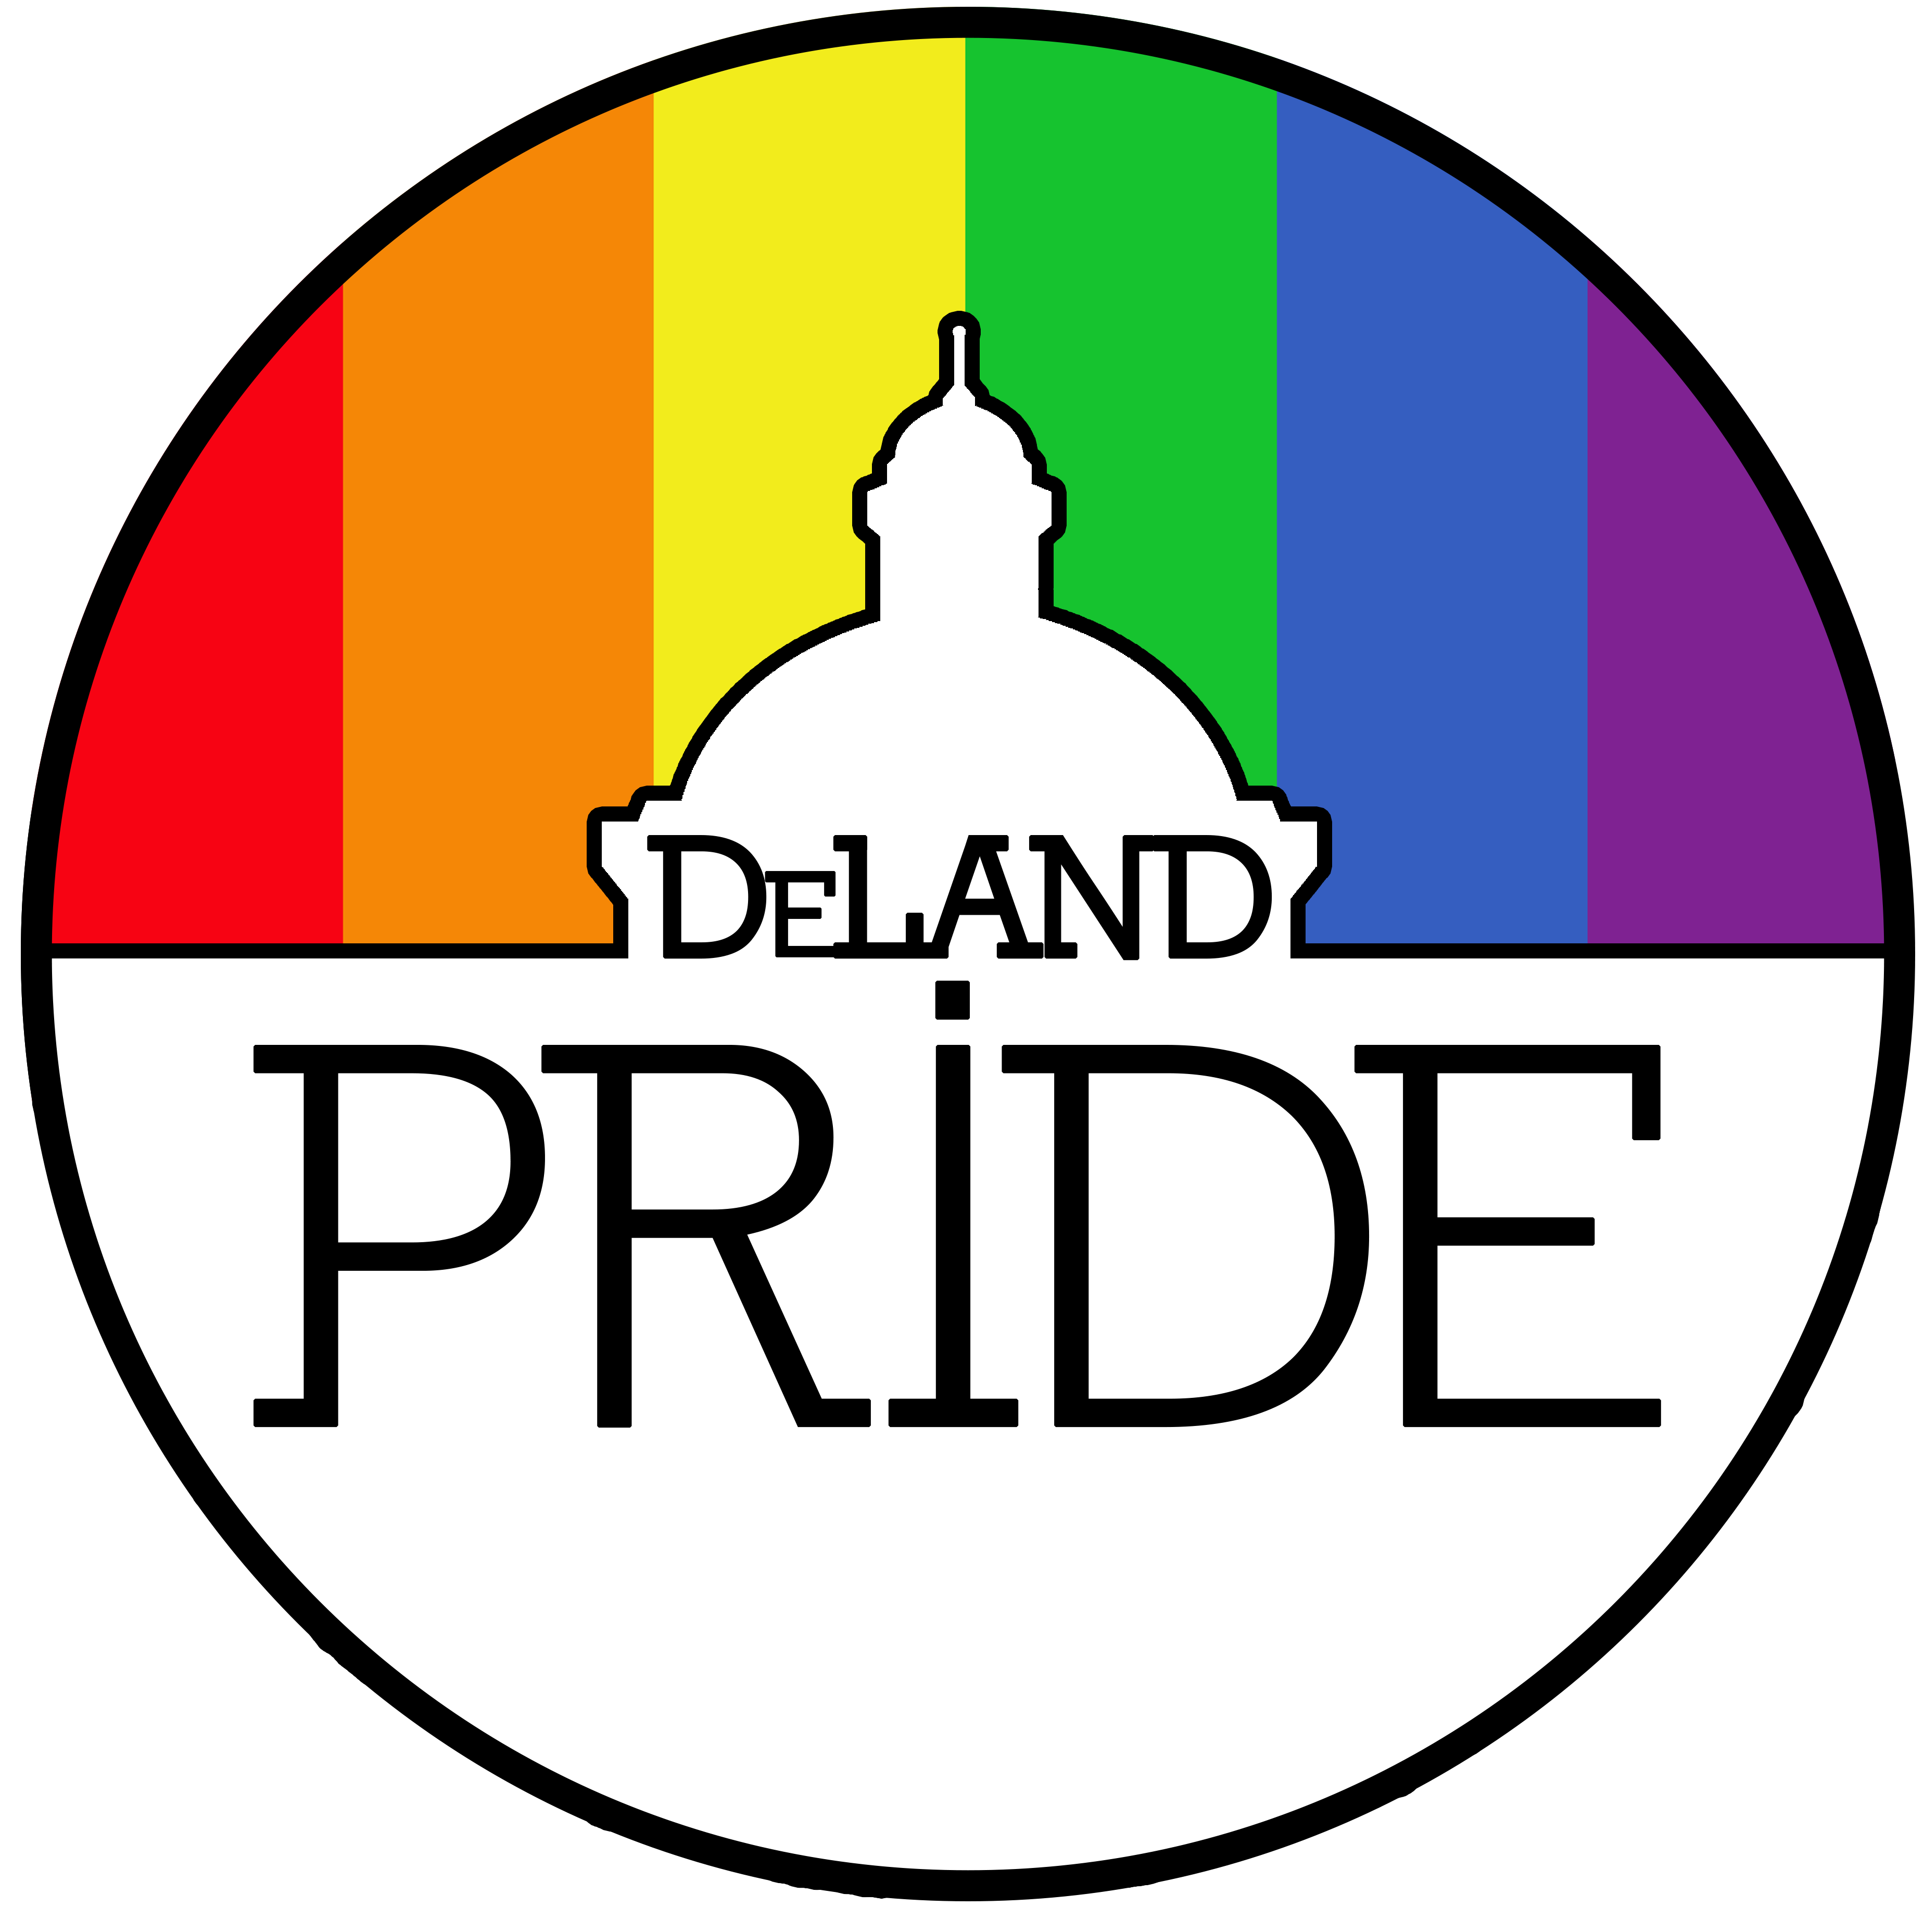 DeLand Pride logo